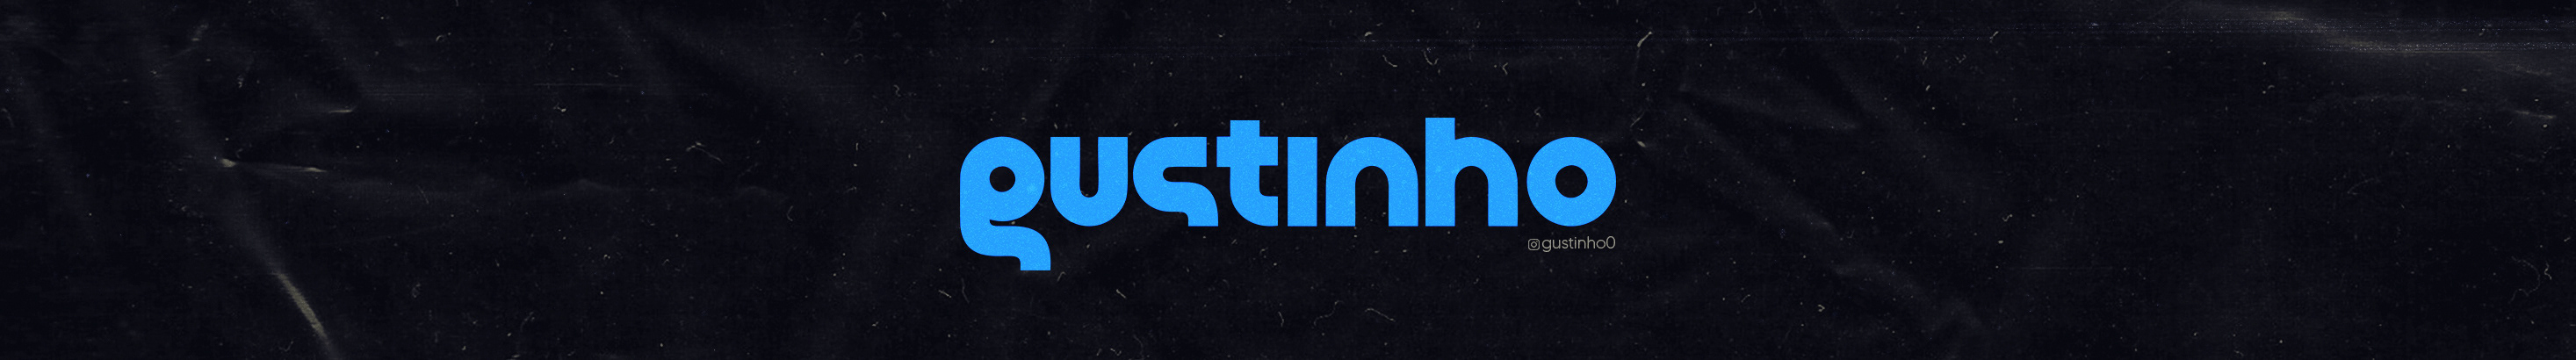 Gustinho Design ✪'s profile banner